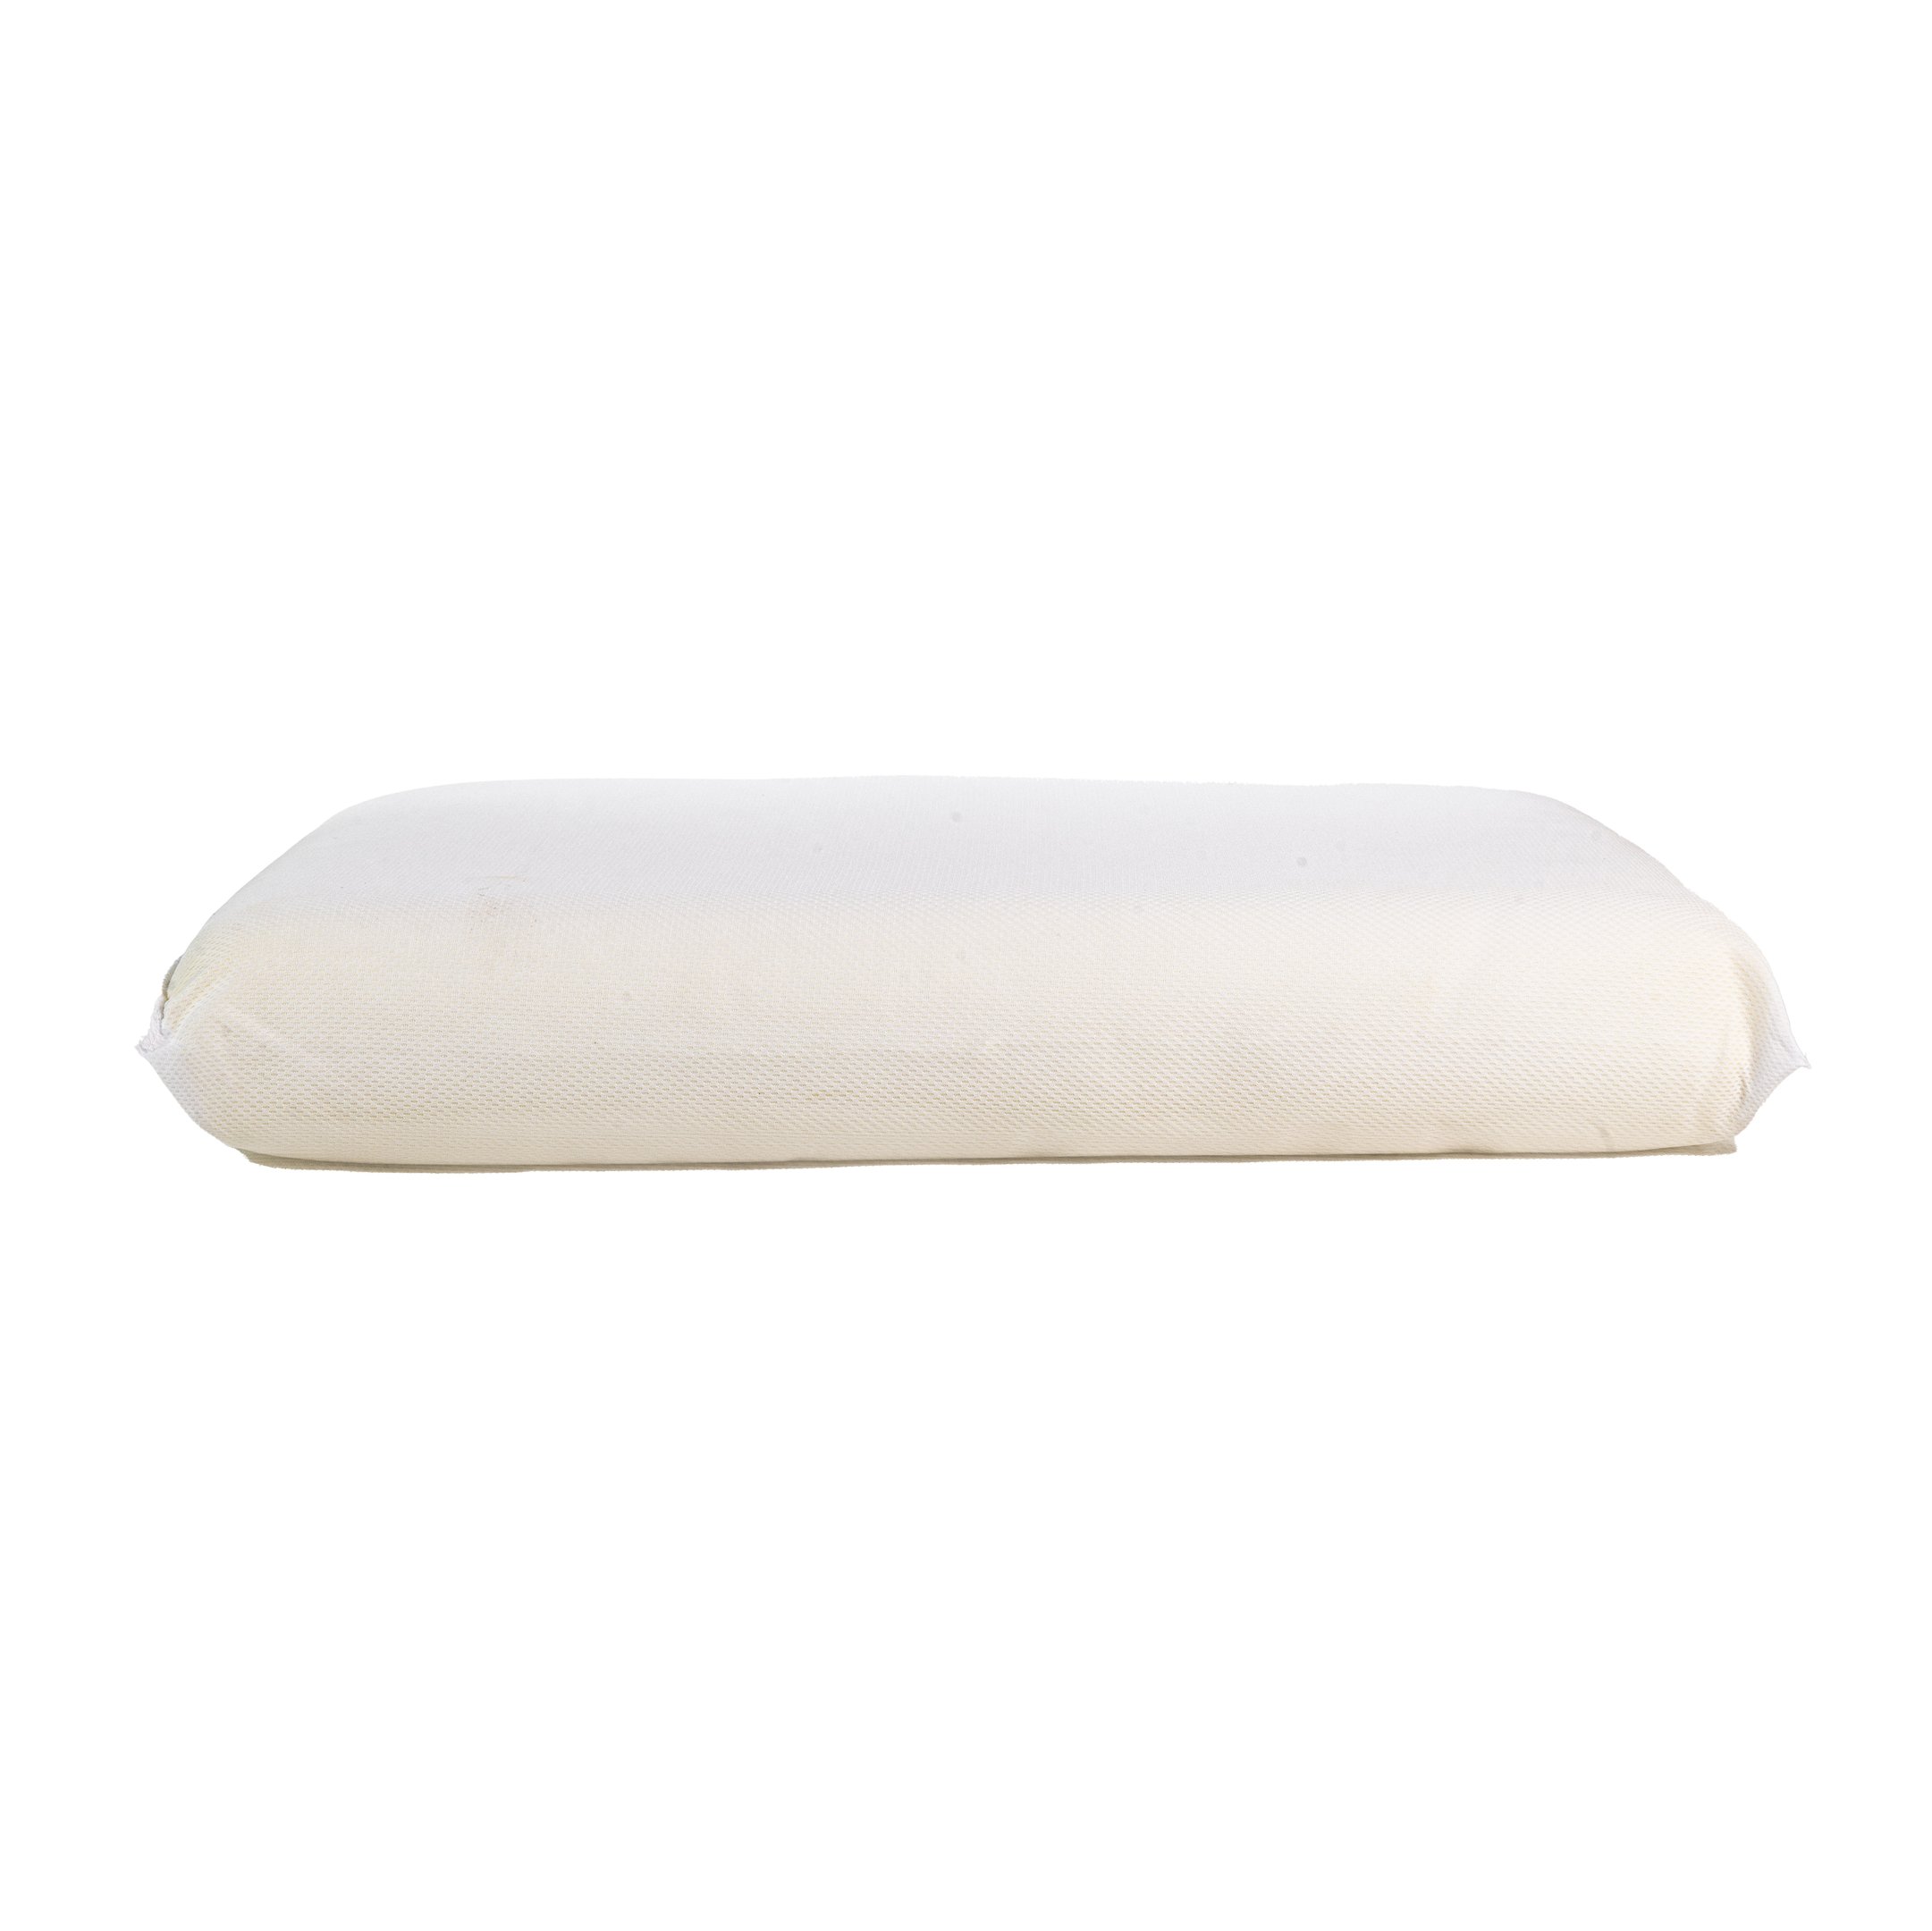 Travesseiro Nasa Visco Perfil Alto 16 Cm Ultrafresh com Capa Antialergico - 3